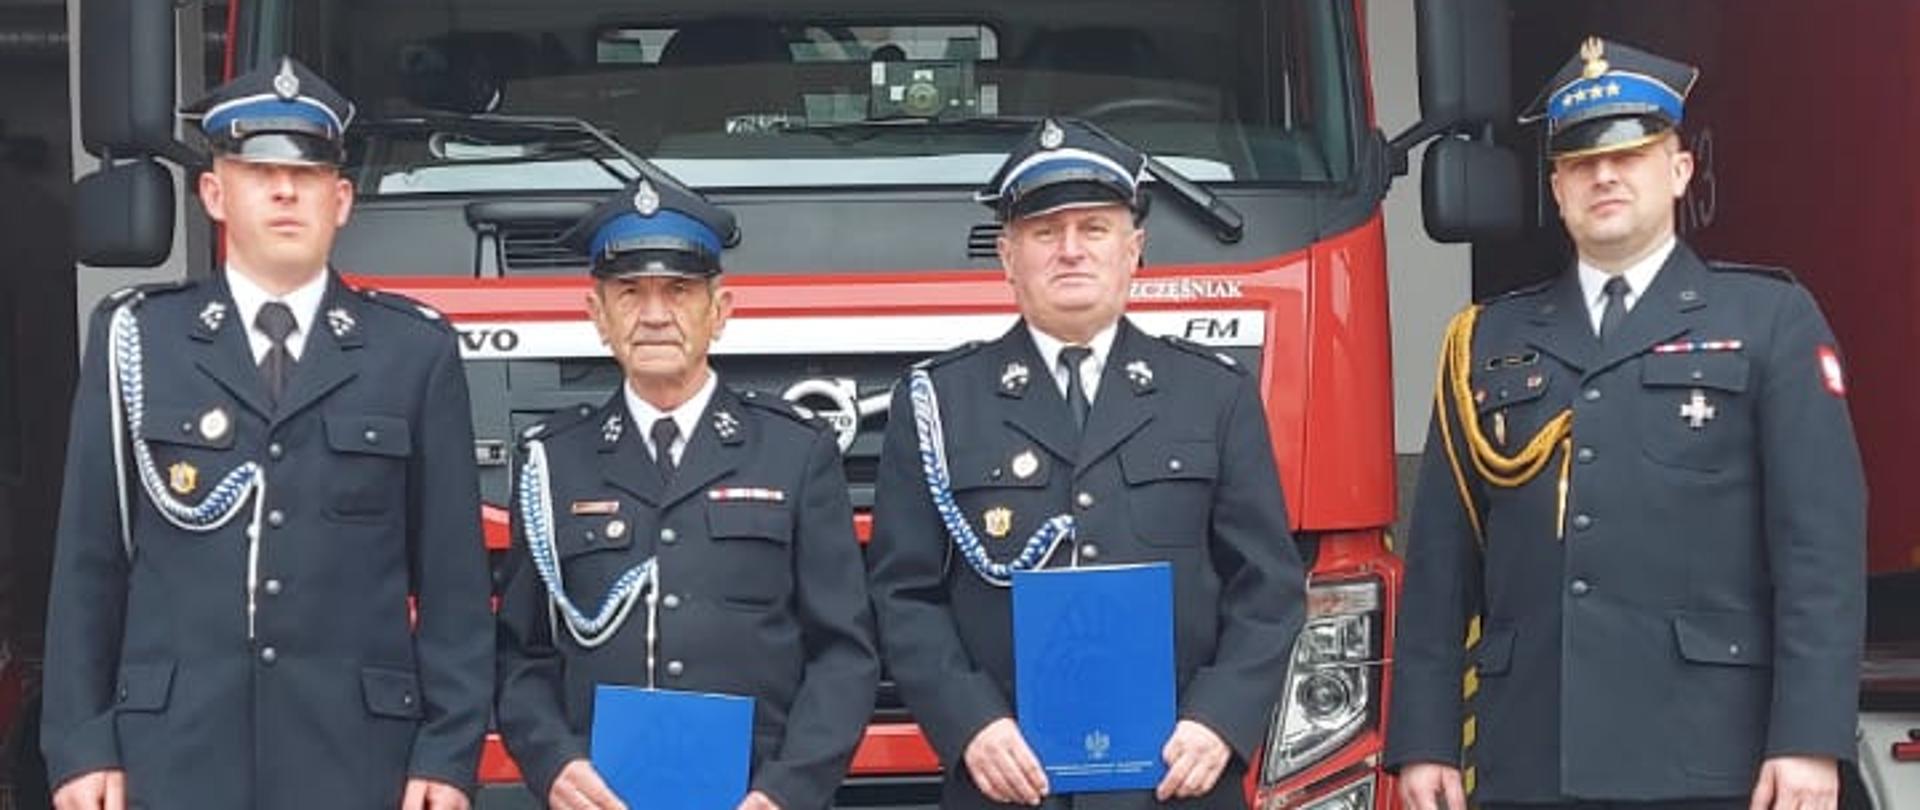 Uroczyste wręczenie promes jednostkom ochotniczych straży pożarnych z terenu powiatu bieszczadzkiego.